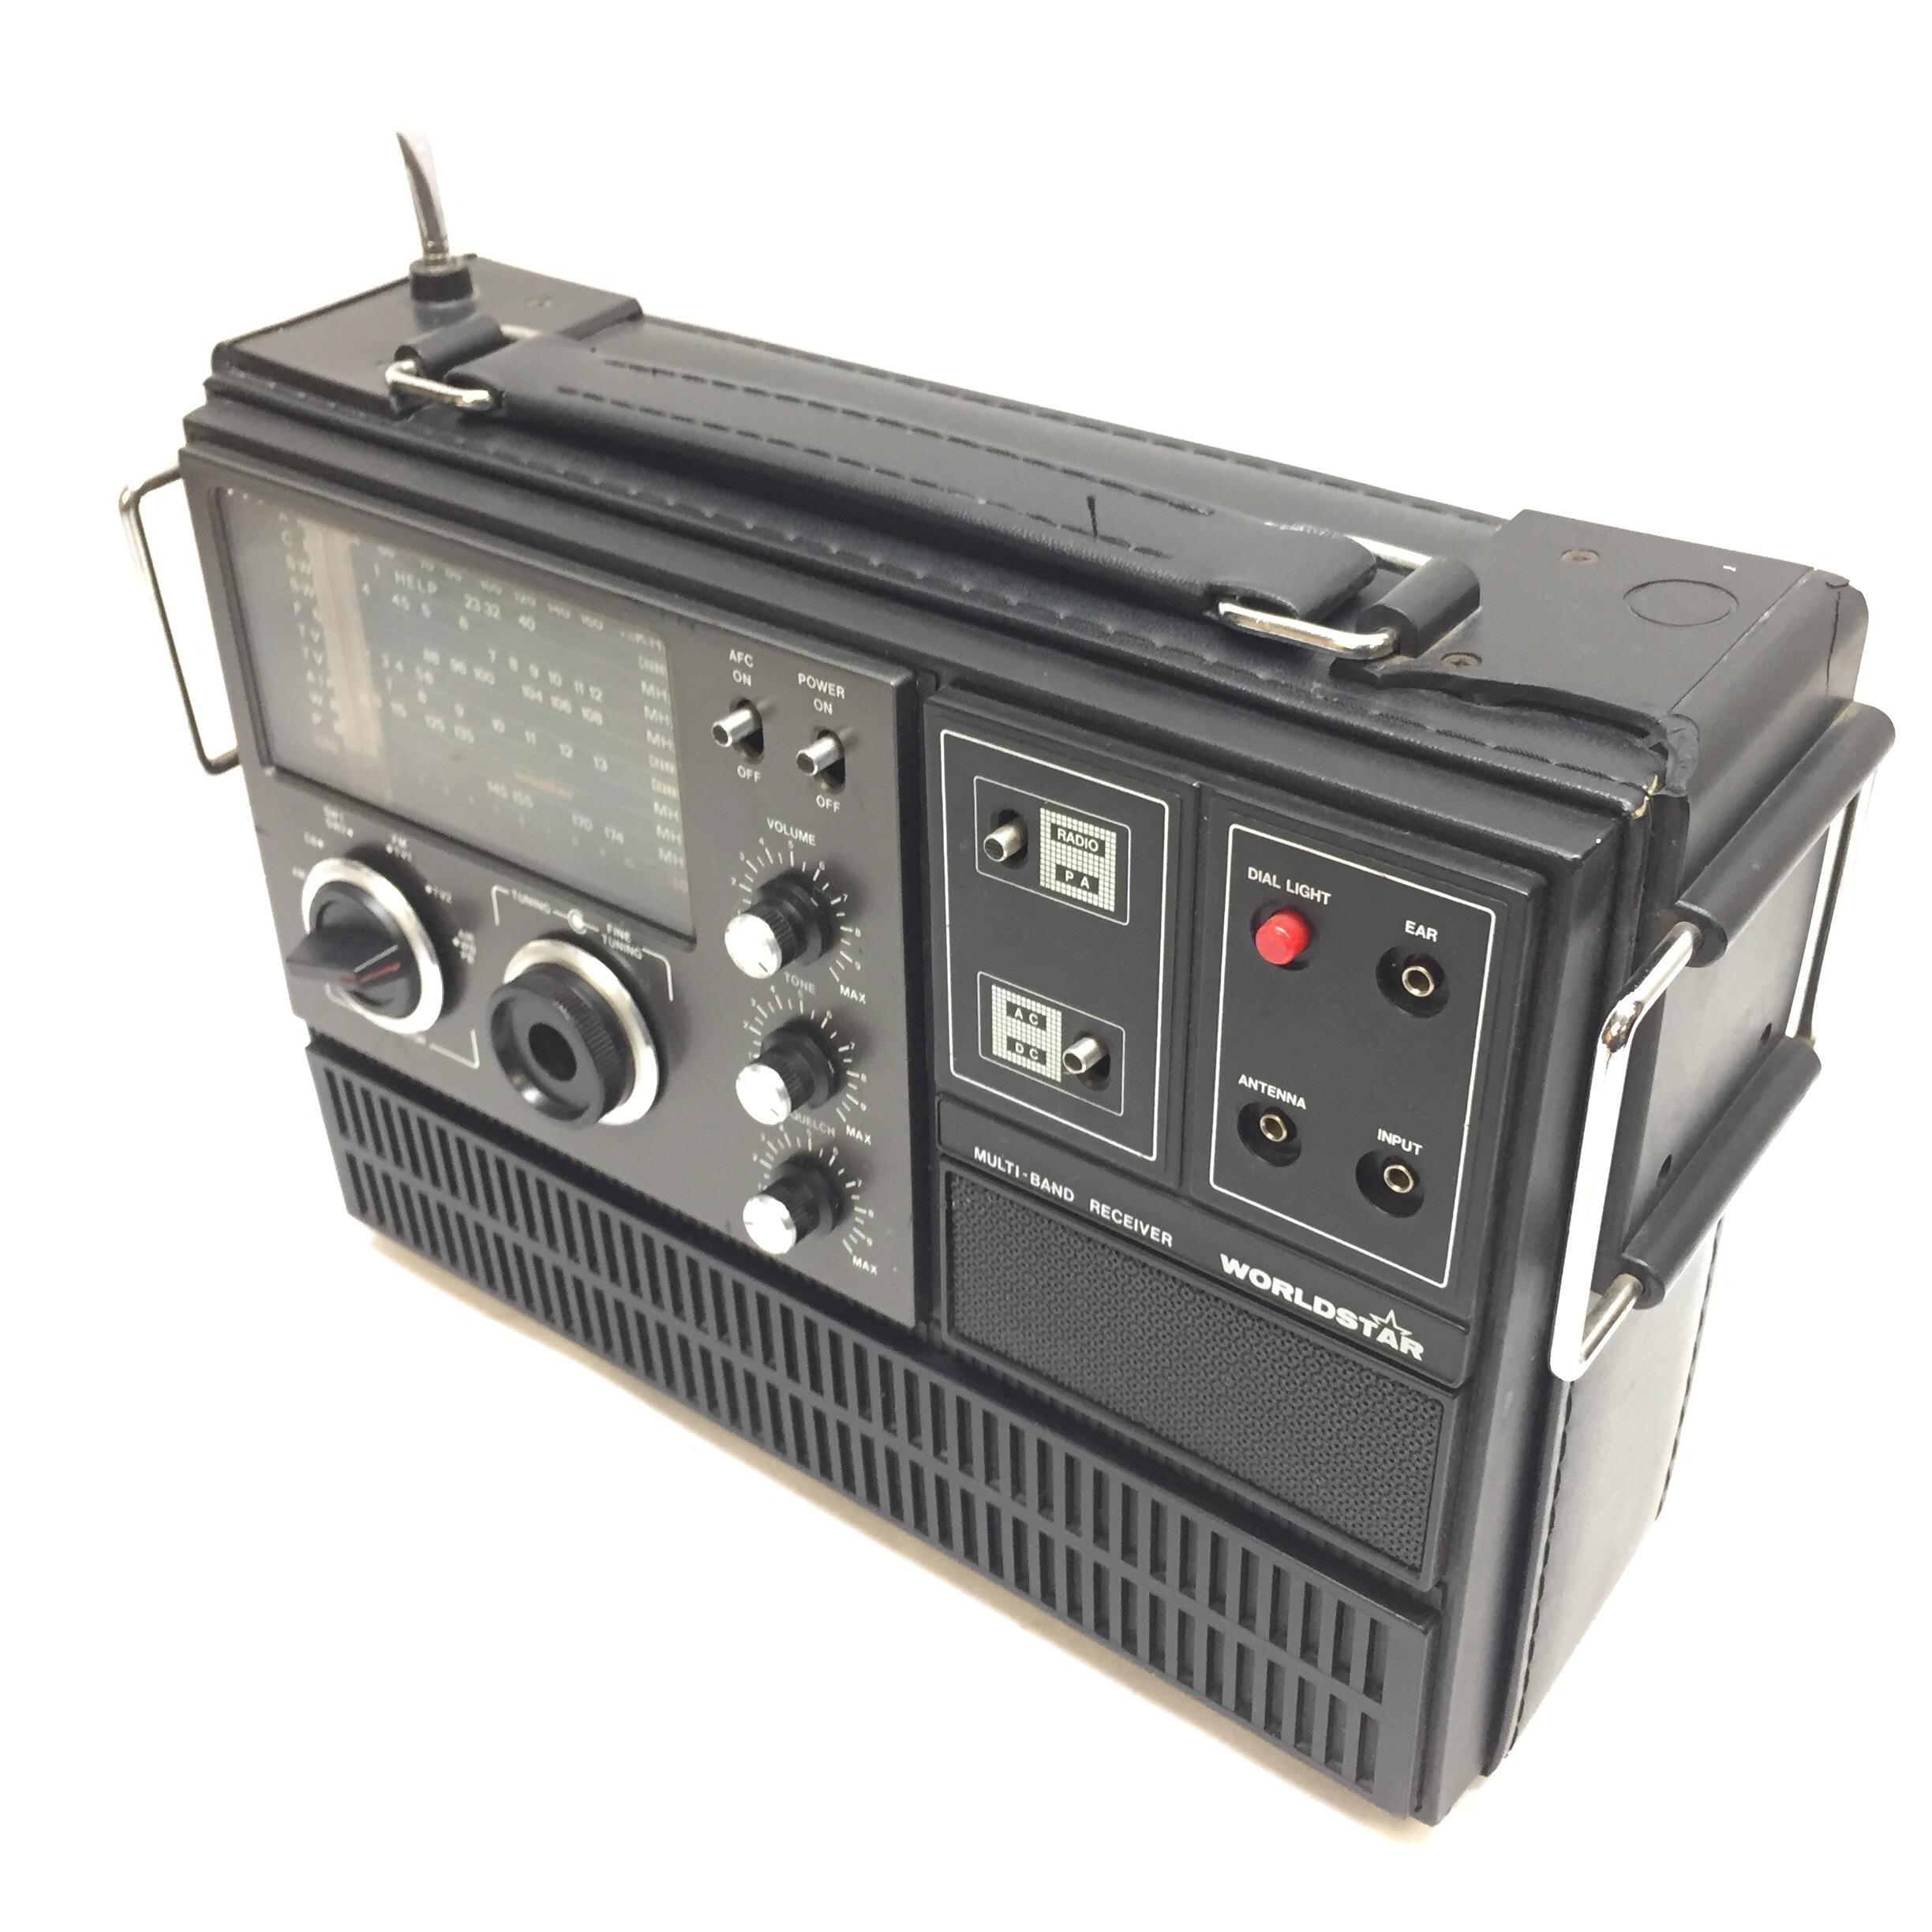 worldstar multiband receiver radio